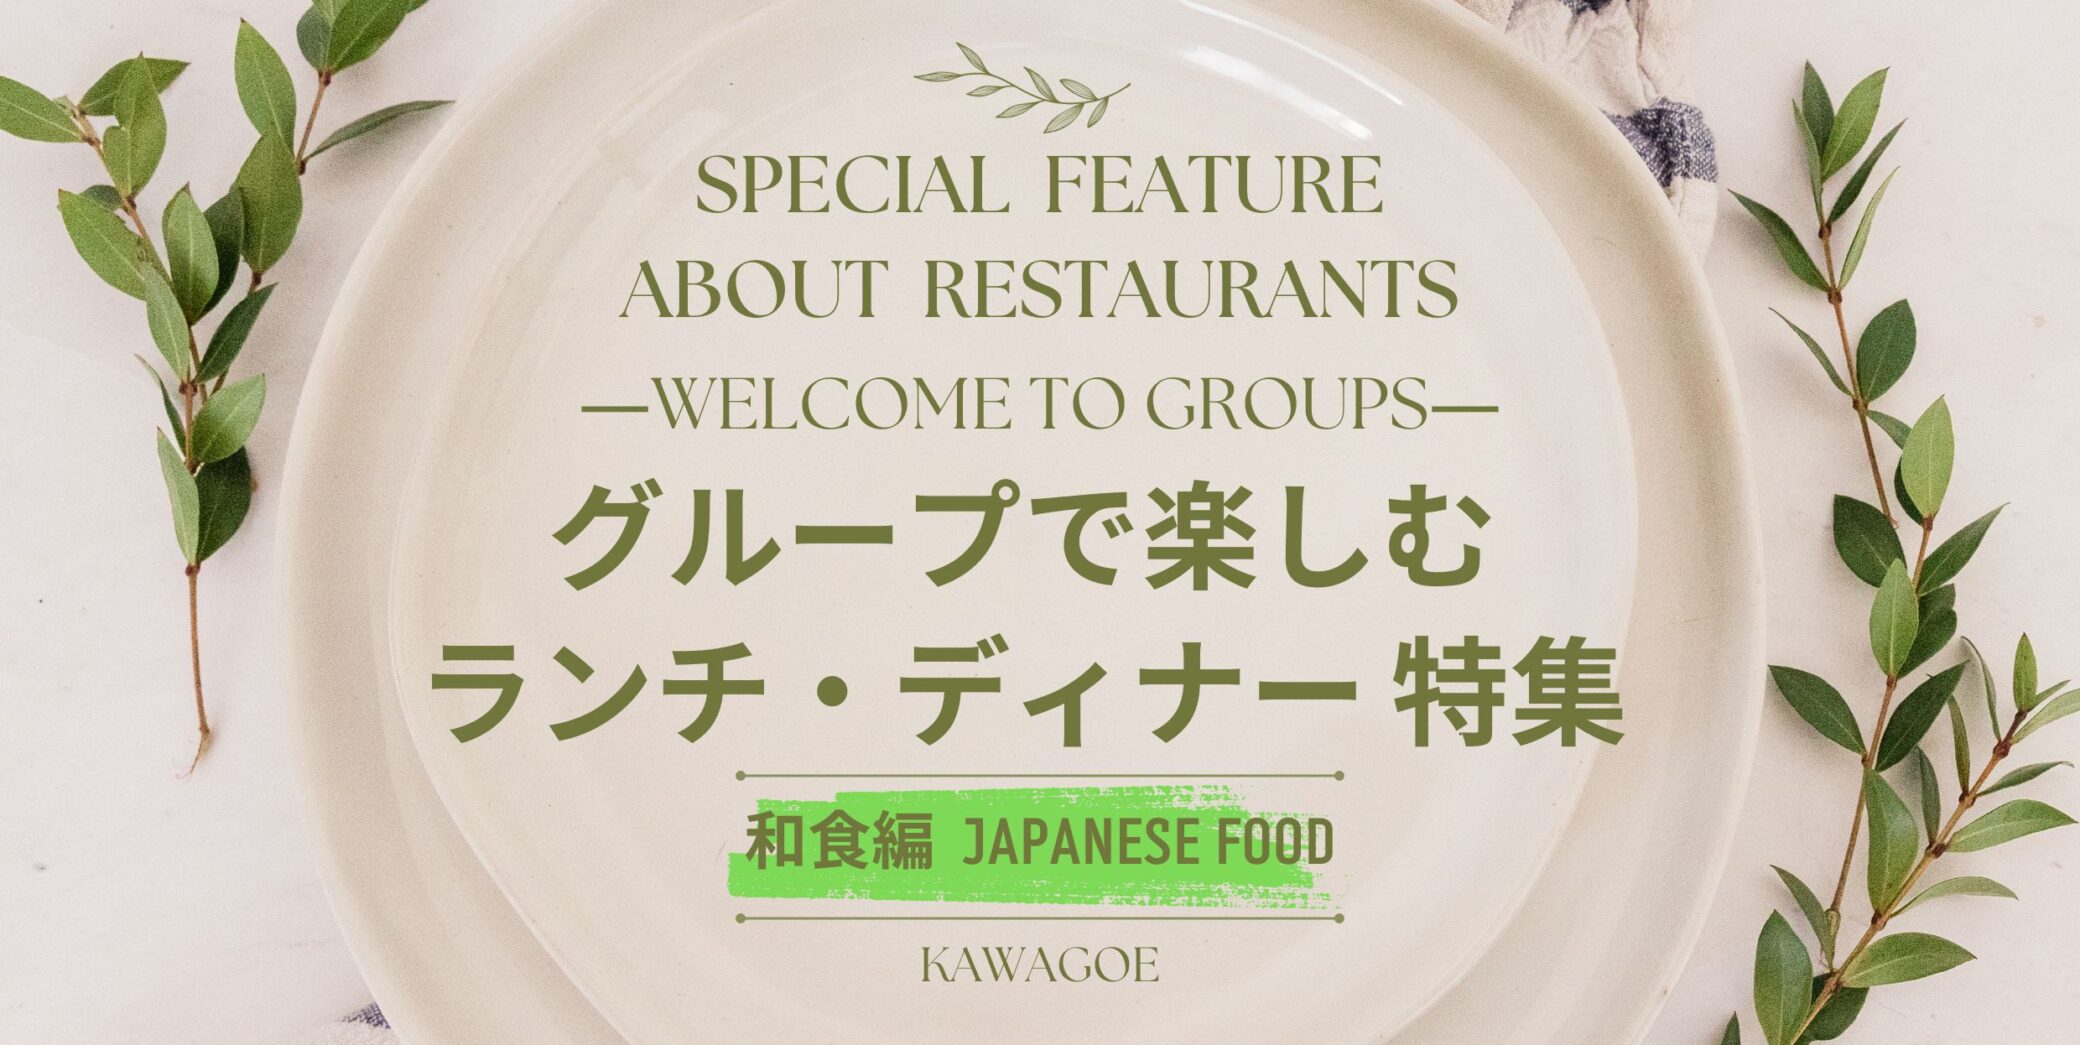 🍴 อาหารกลางวันและอาหารเย็นพิเศษสำหรับหมู่คณะ - ฉบับอาหารญี่ปุ่น - 🎉